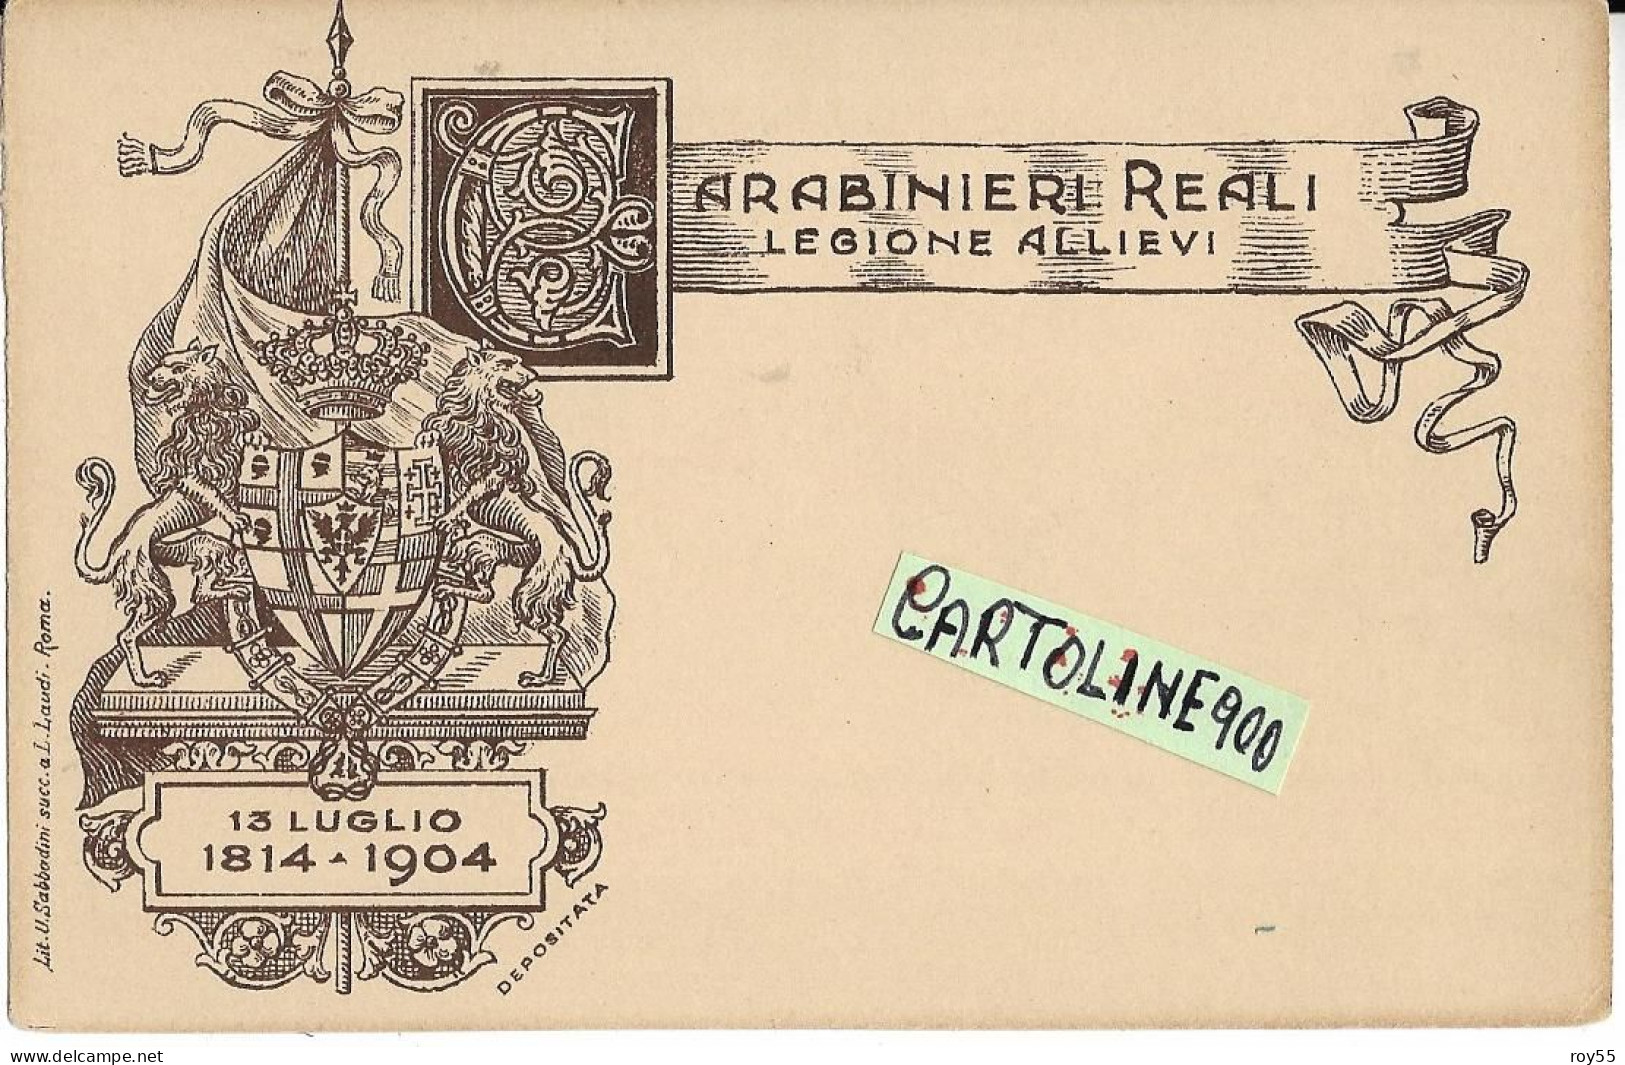 Militare Militari Carabinieri Reali Legione Allievi Cartolina Militare (f.piccolo/v.retro) - Régiments